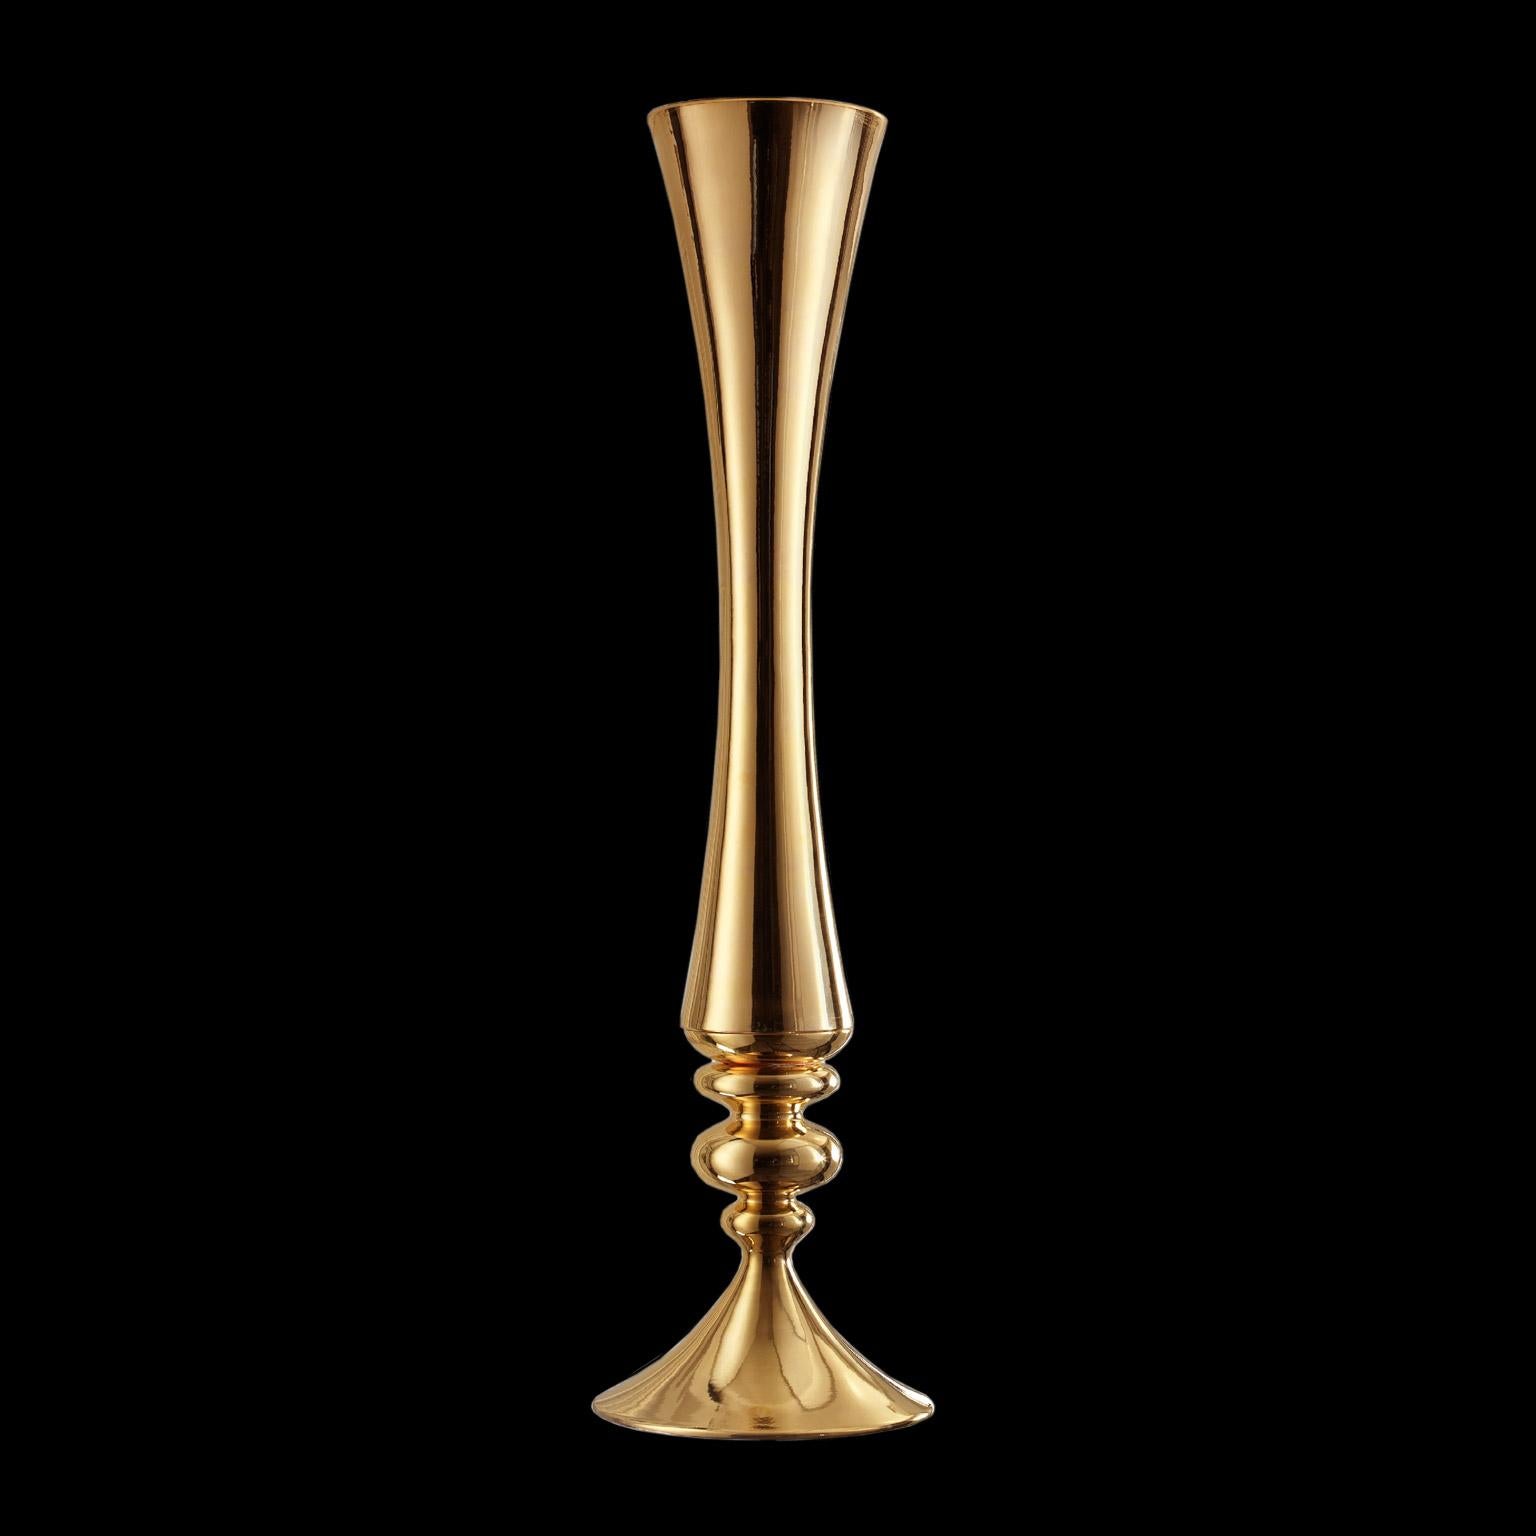 Keramik-Vase MUSE
kabeljau. VS222
handgefertigt aus 24-karätigem Gold
und innen weiß glasiert 

maßnahmen: 
H 185,0 cm.
Dm. 27.0 cm.